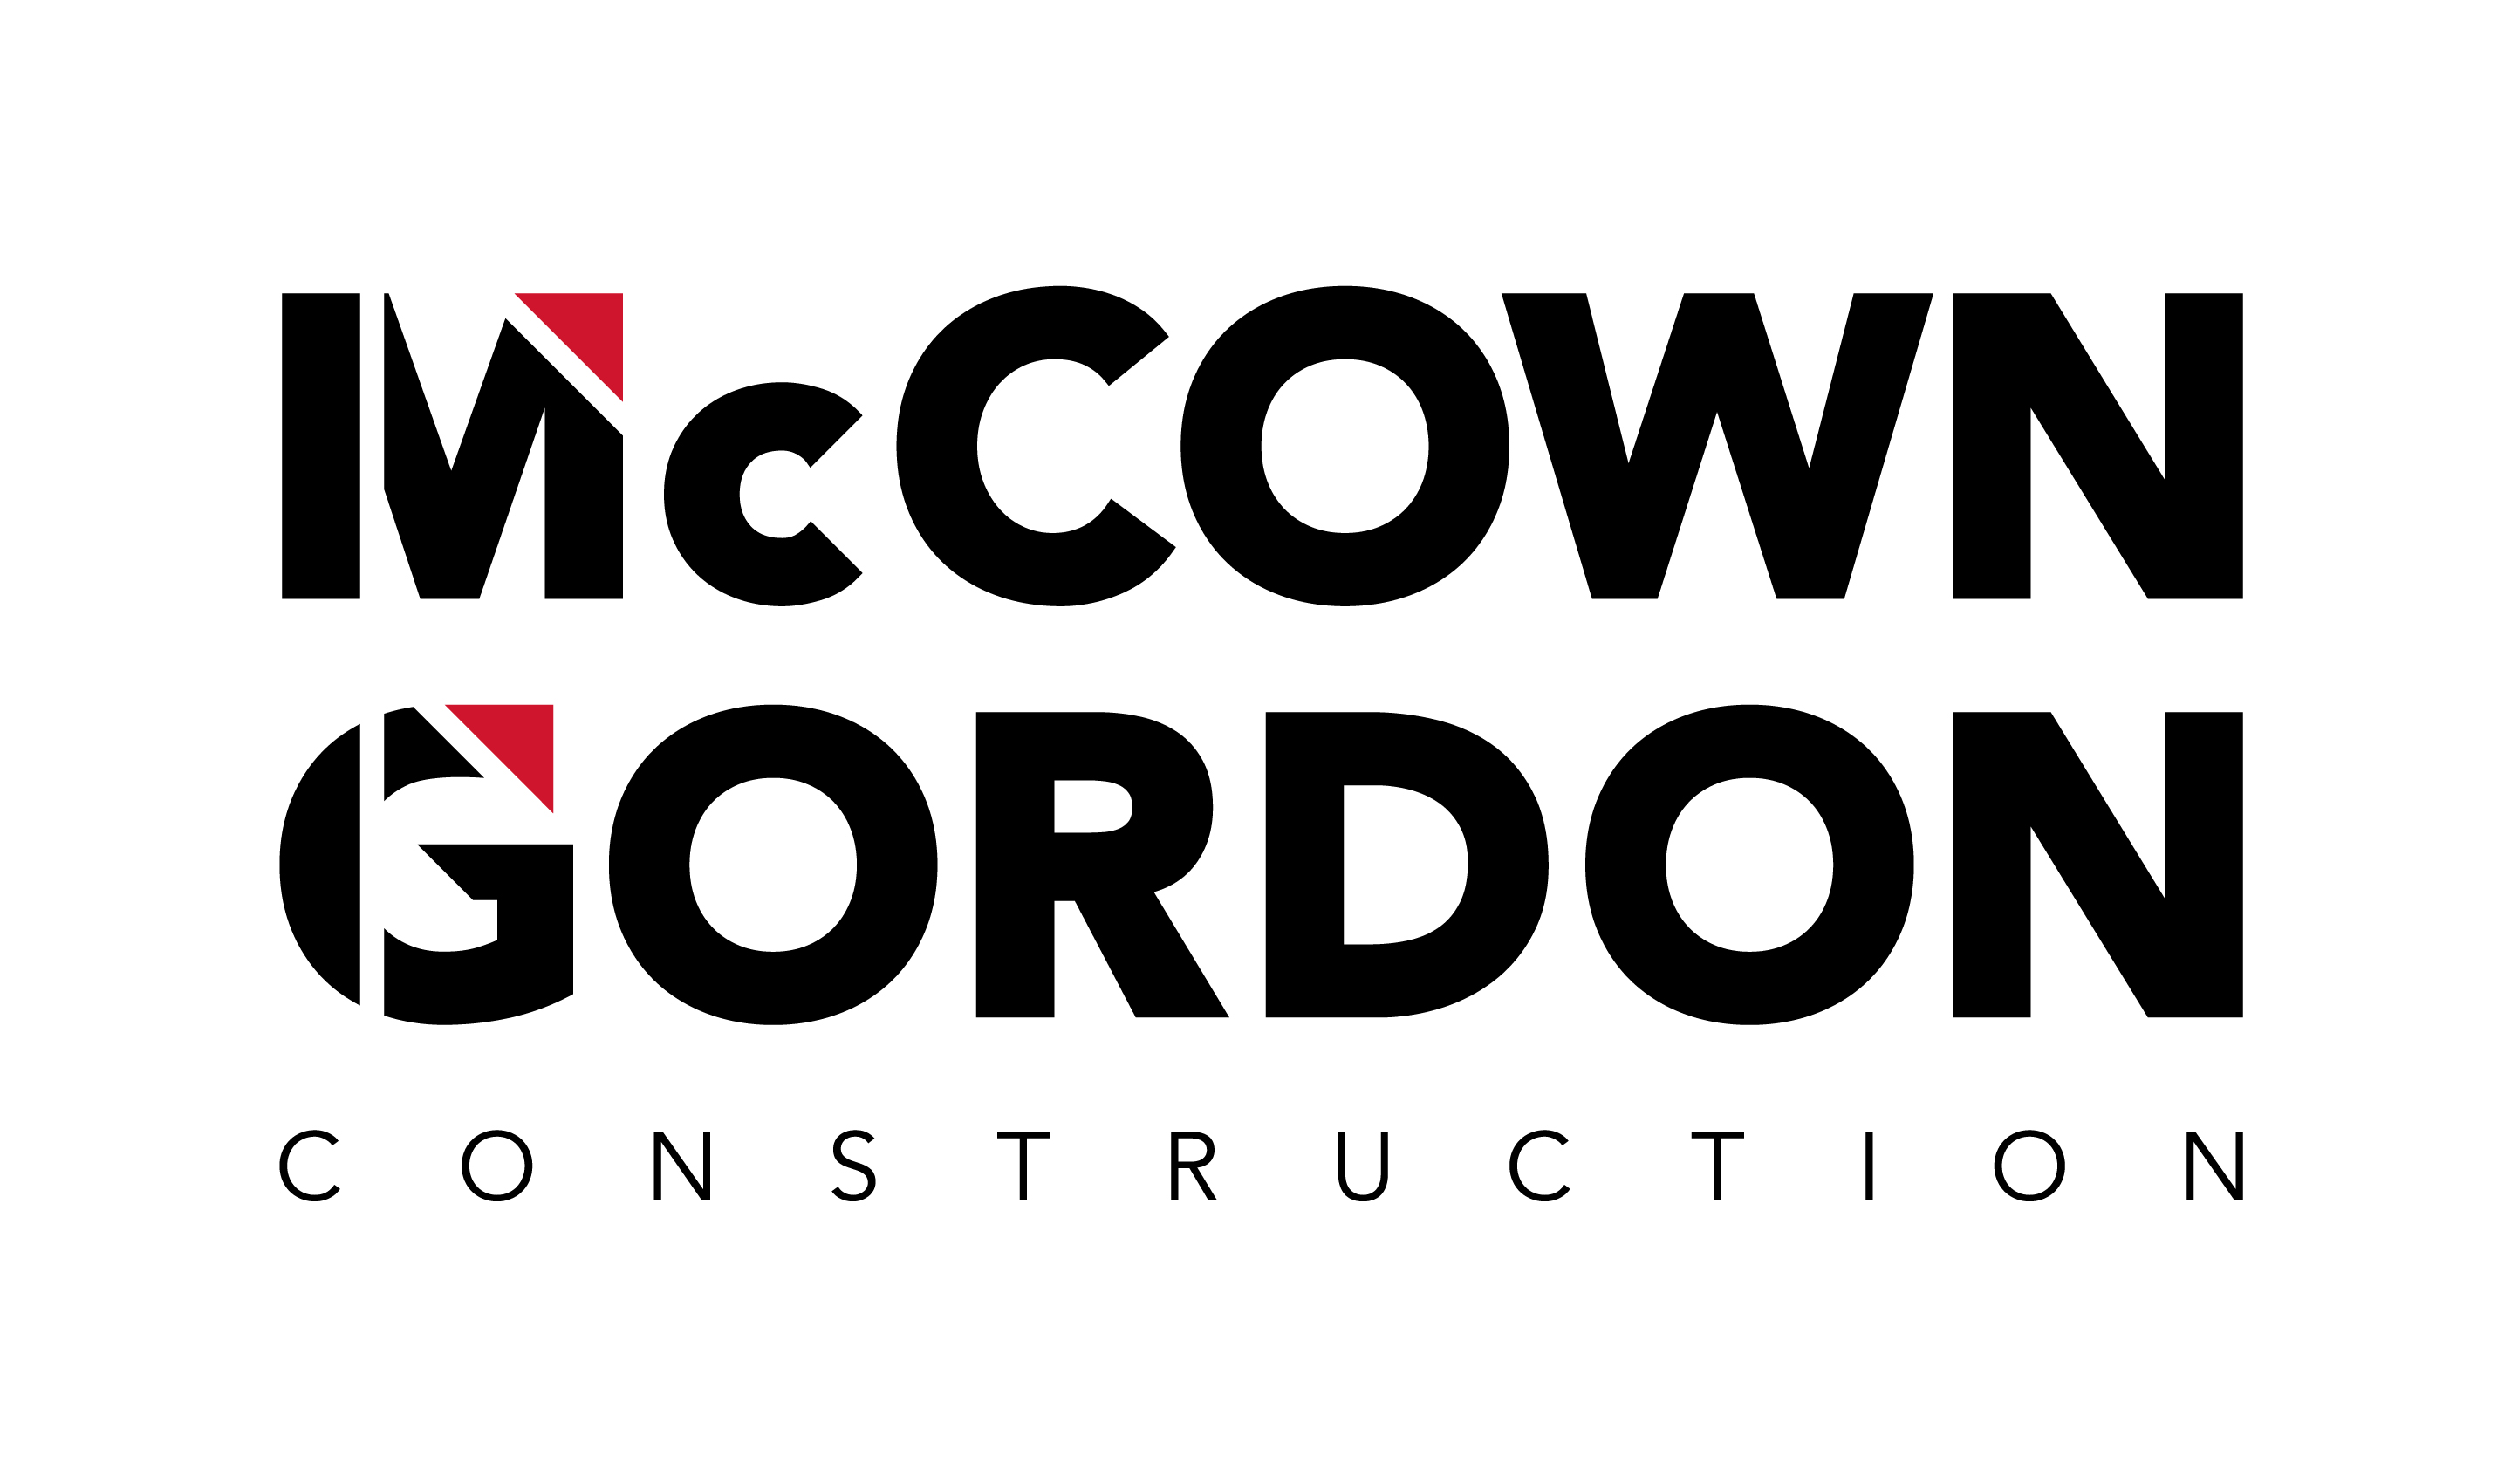 McCown Gordon